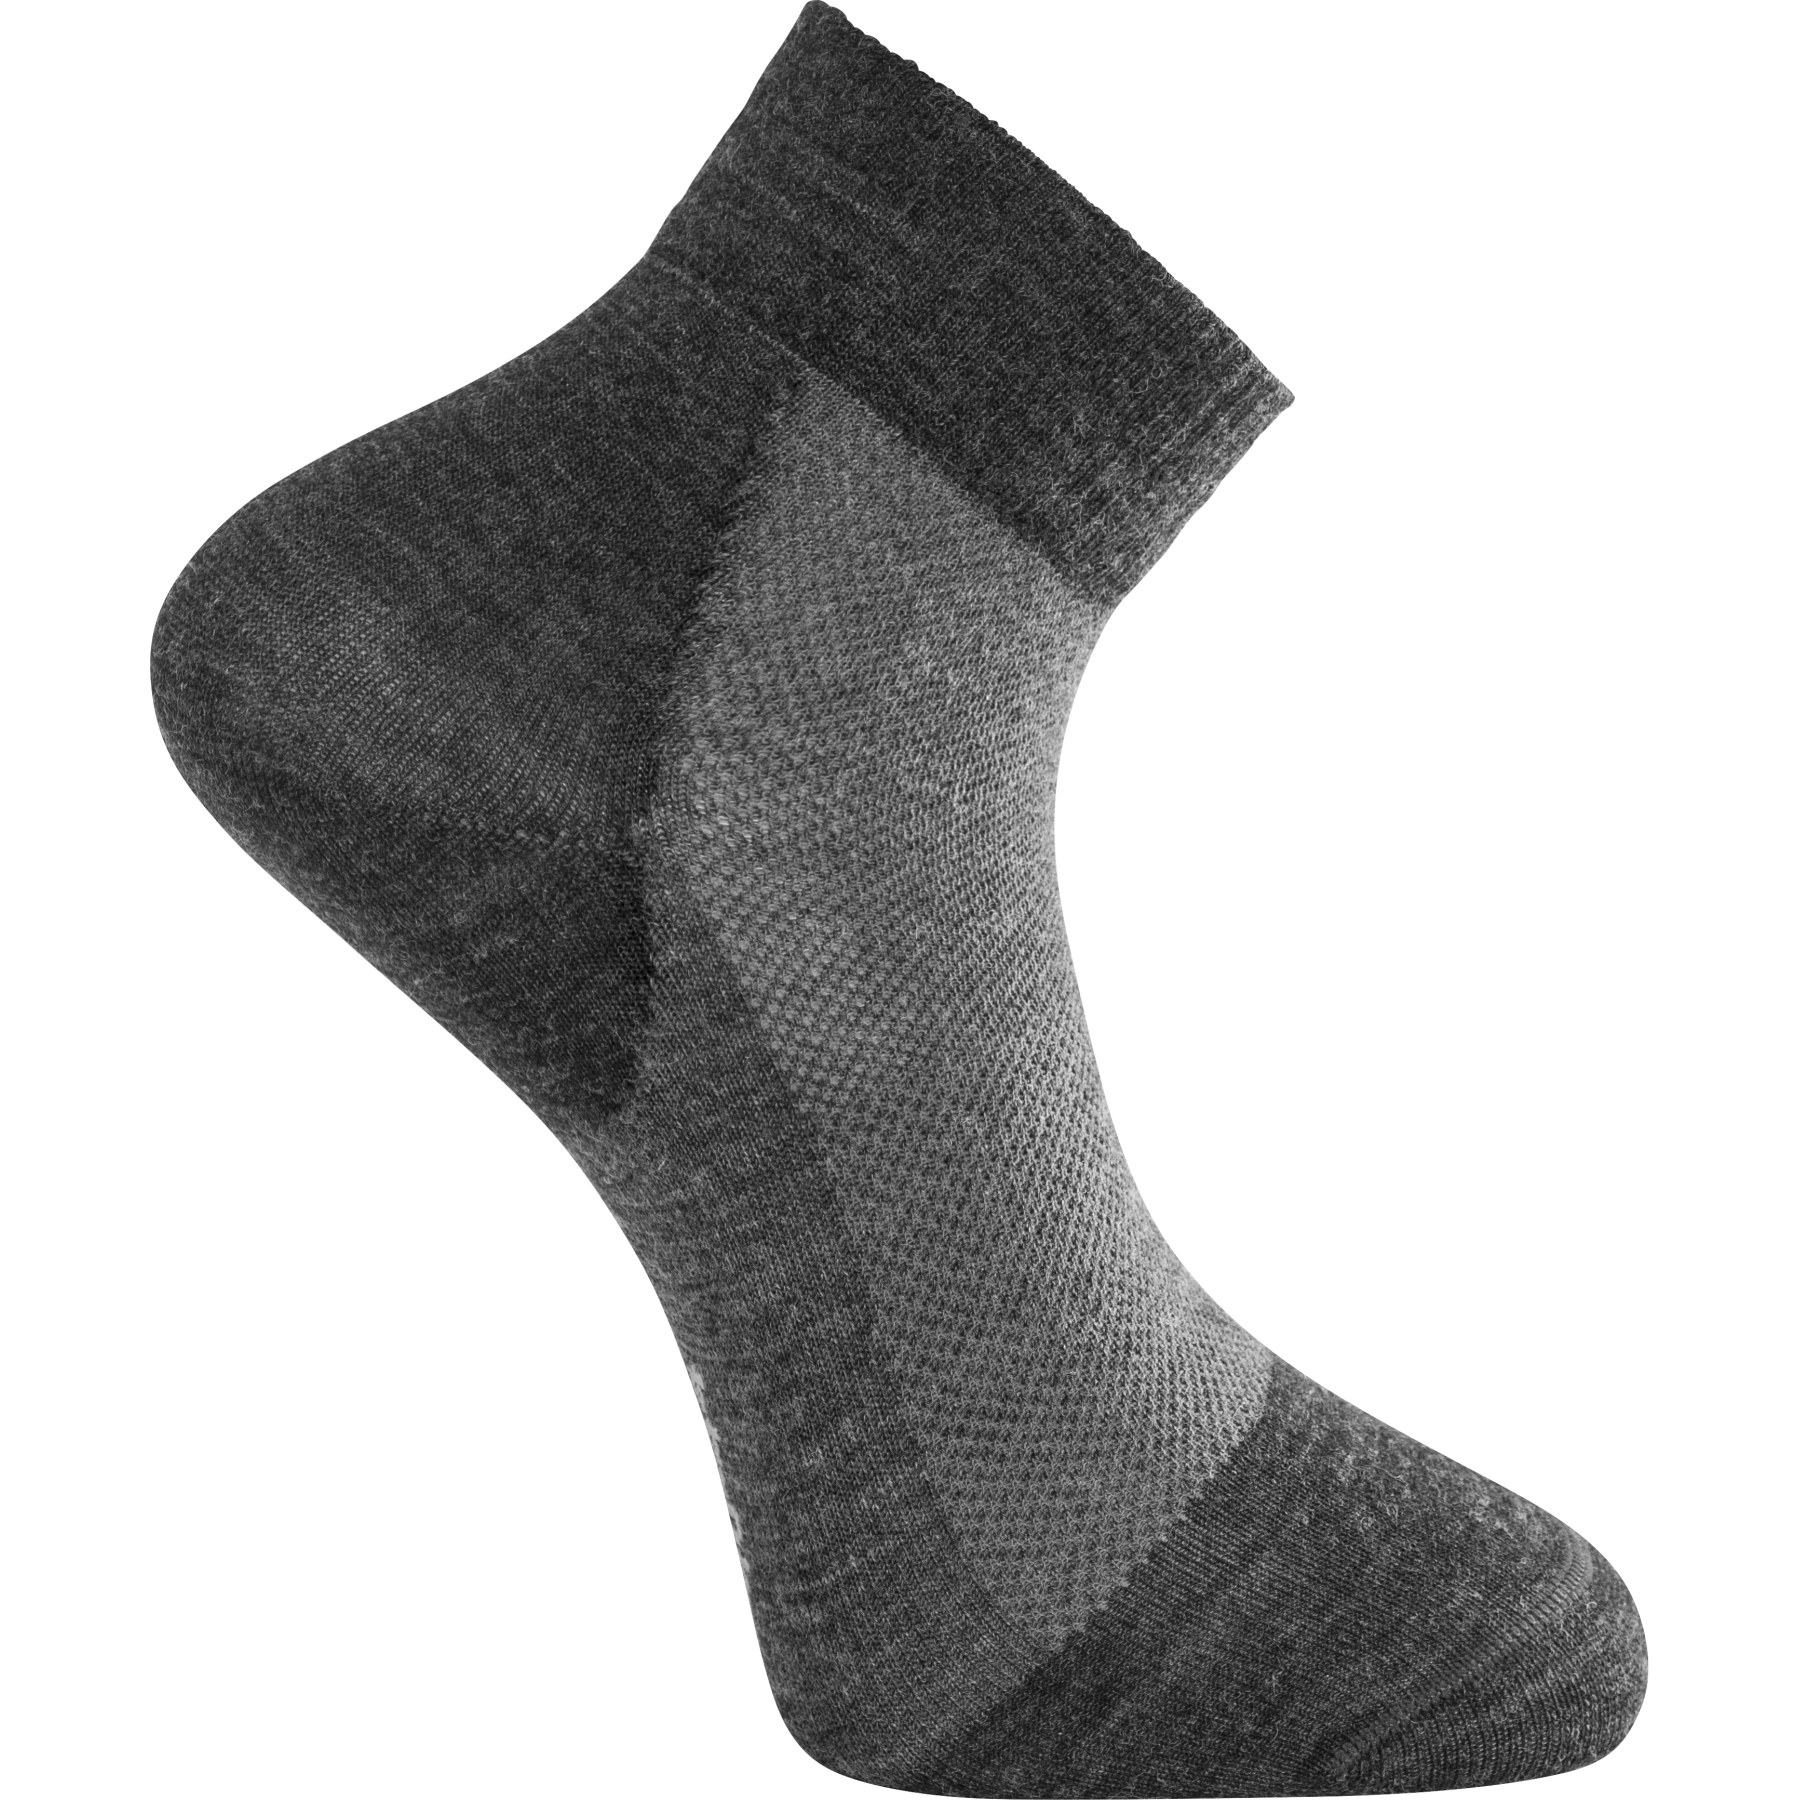 Produktbild von Woolpower Skilled Liner Short Socken - dark grey-grey